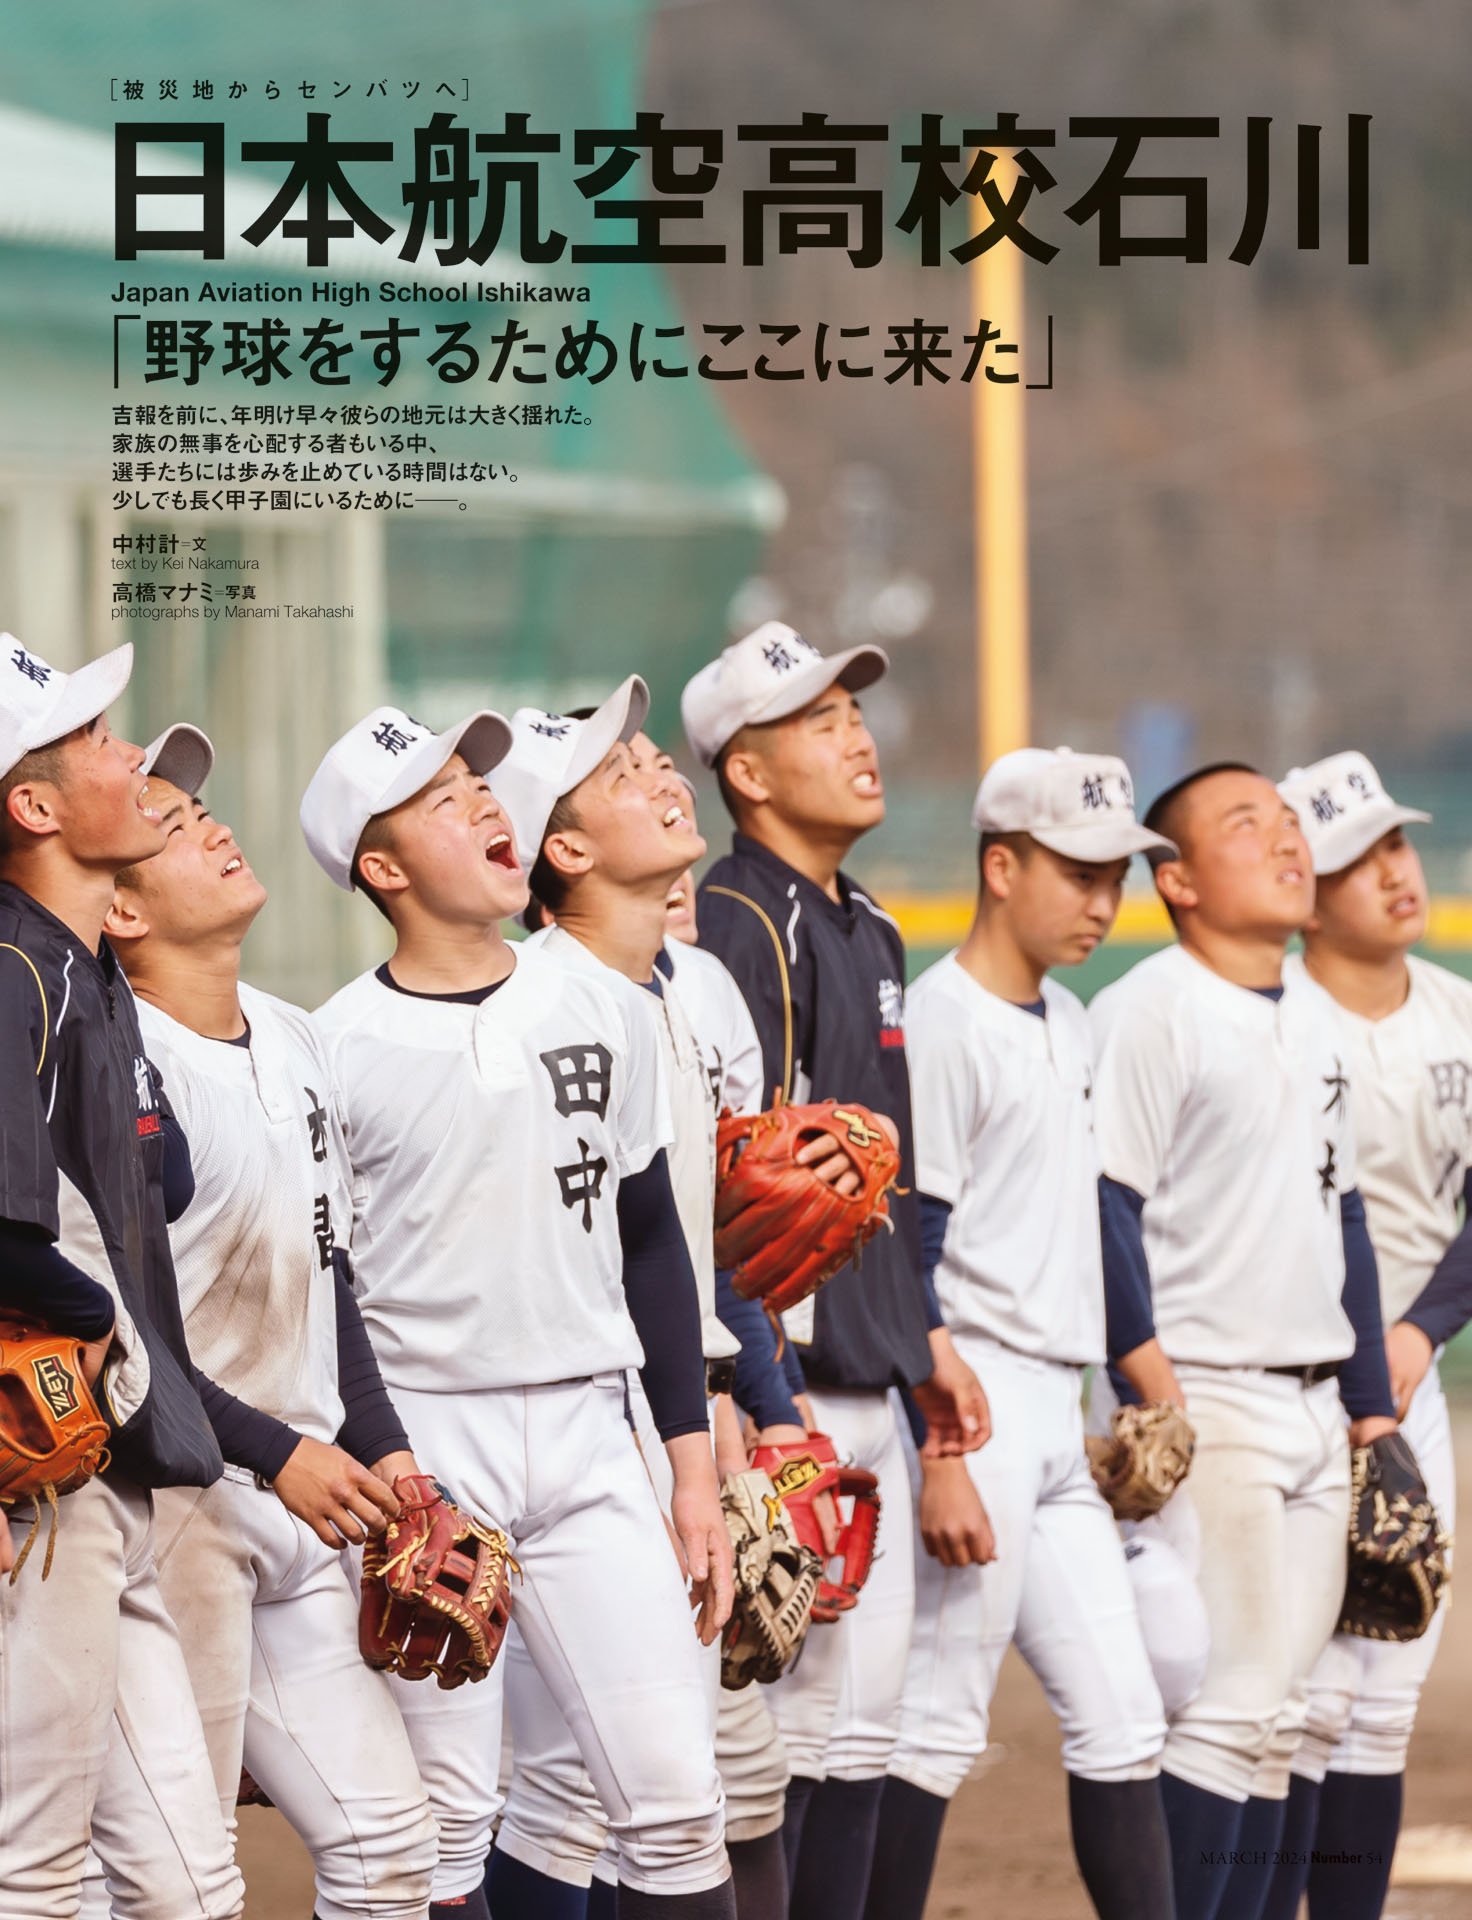 日本航空高校石川「野球をするためにここに来た」